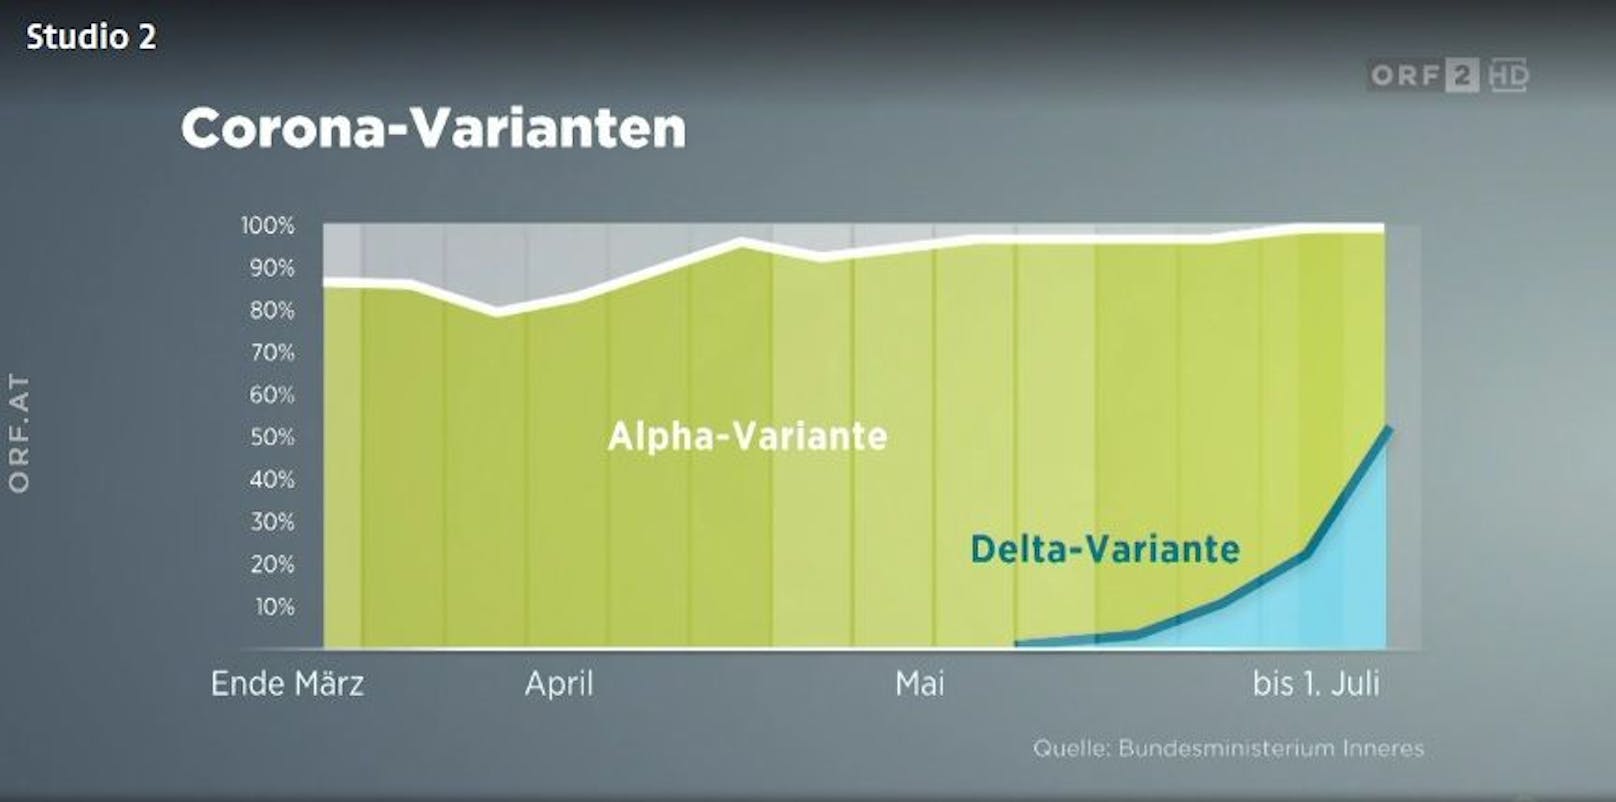 In Österreich macht die Delta-Variante bereits die Hälfte aller Neuinfektionen aus.